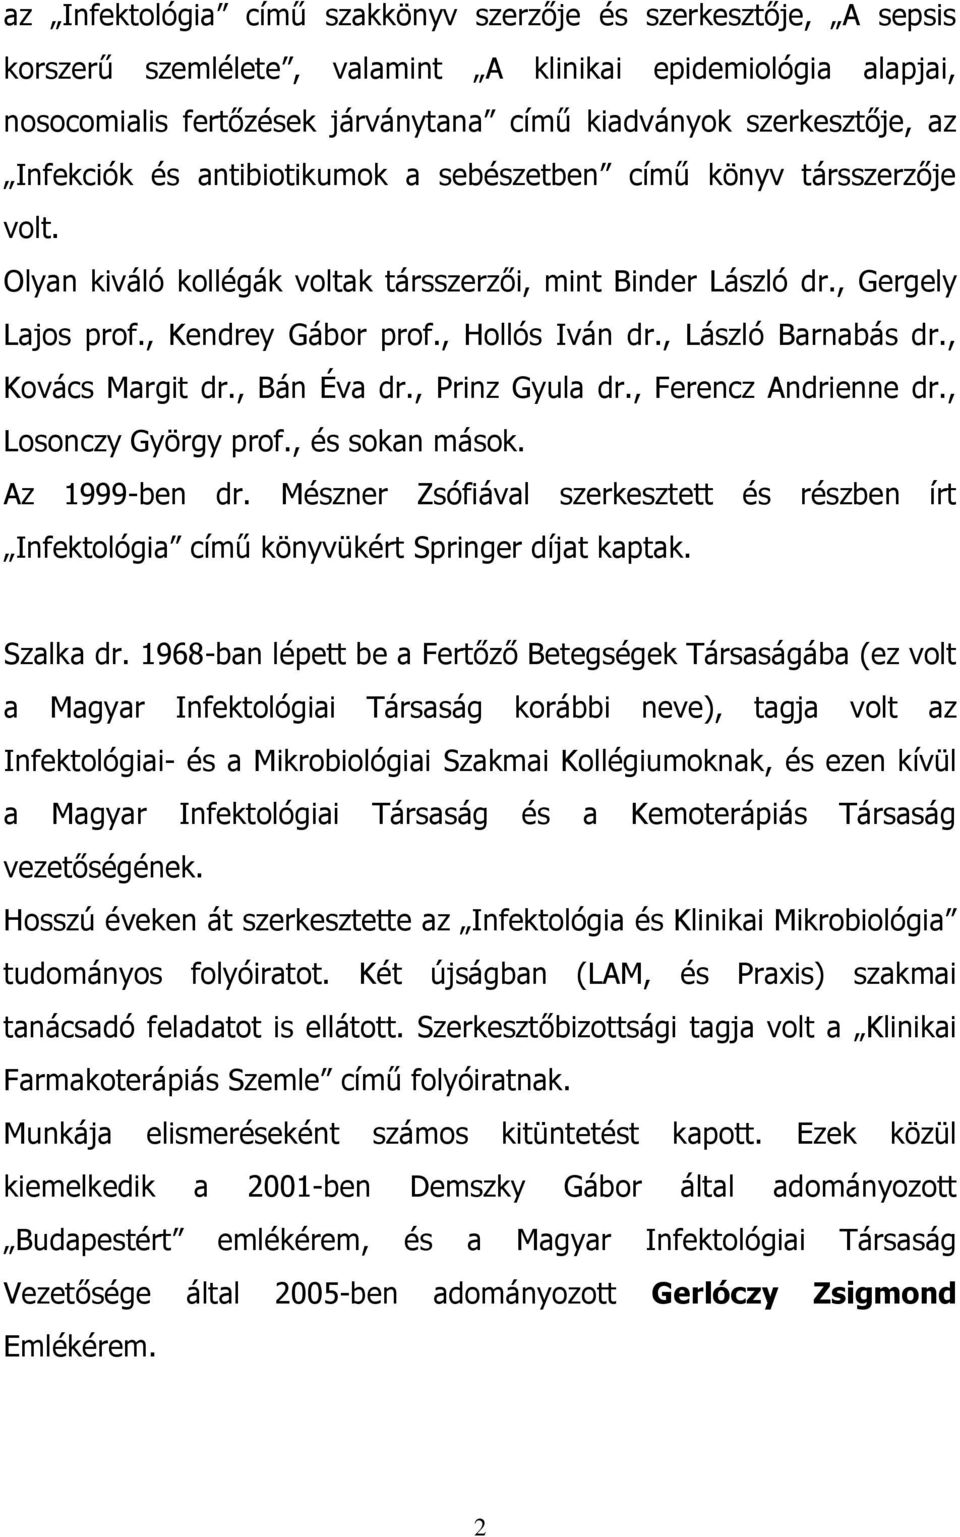 , László Barnabás dr., Kovács Margit dr., Bán Éva dr., Prinz Gyula dr., Ferencz Andrienne dr., Losonczy György prof., és sokan mások. Az 1999-ben dr.